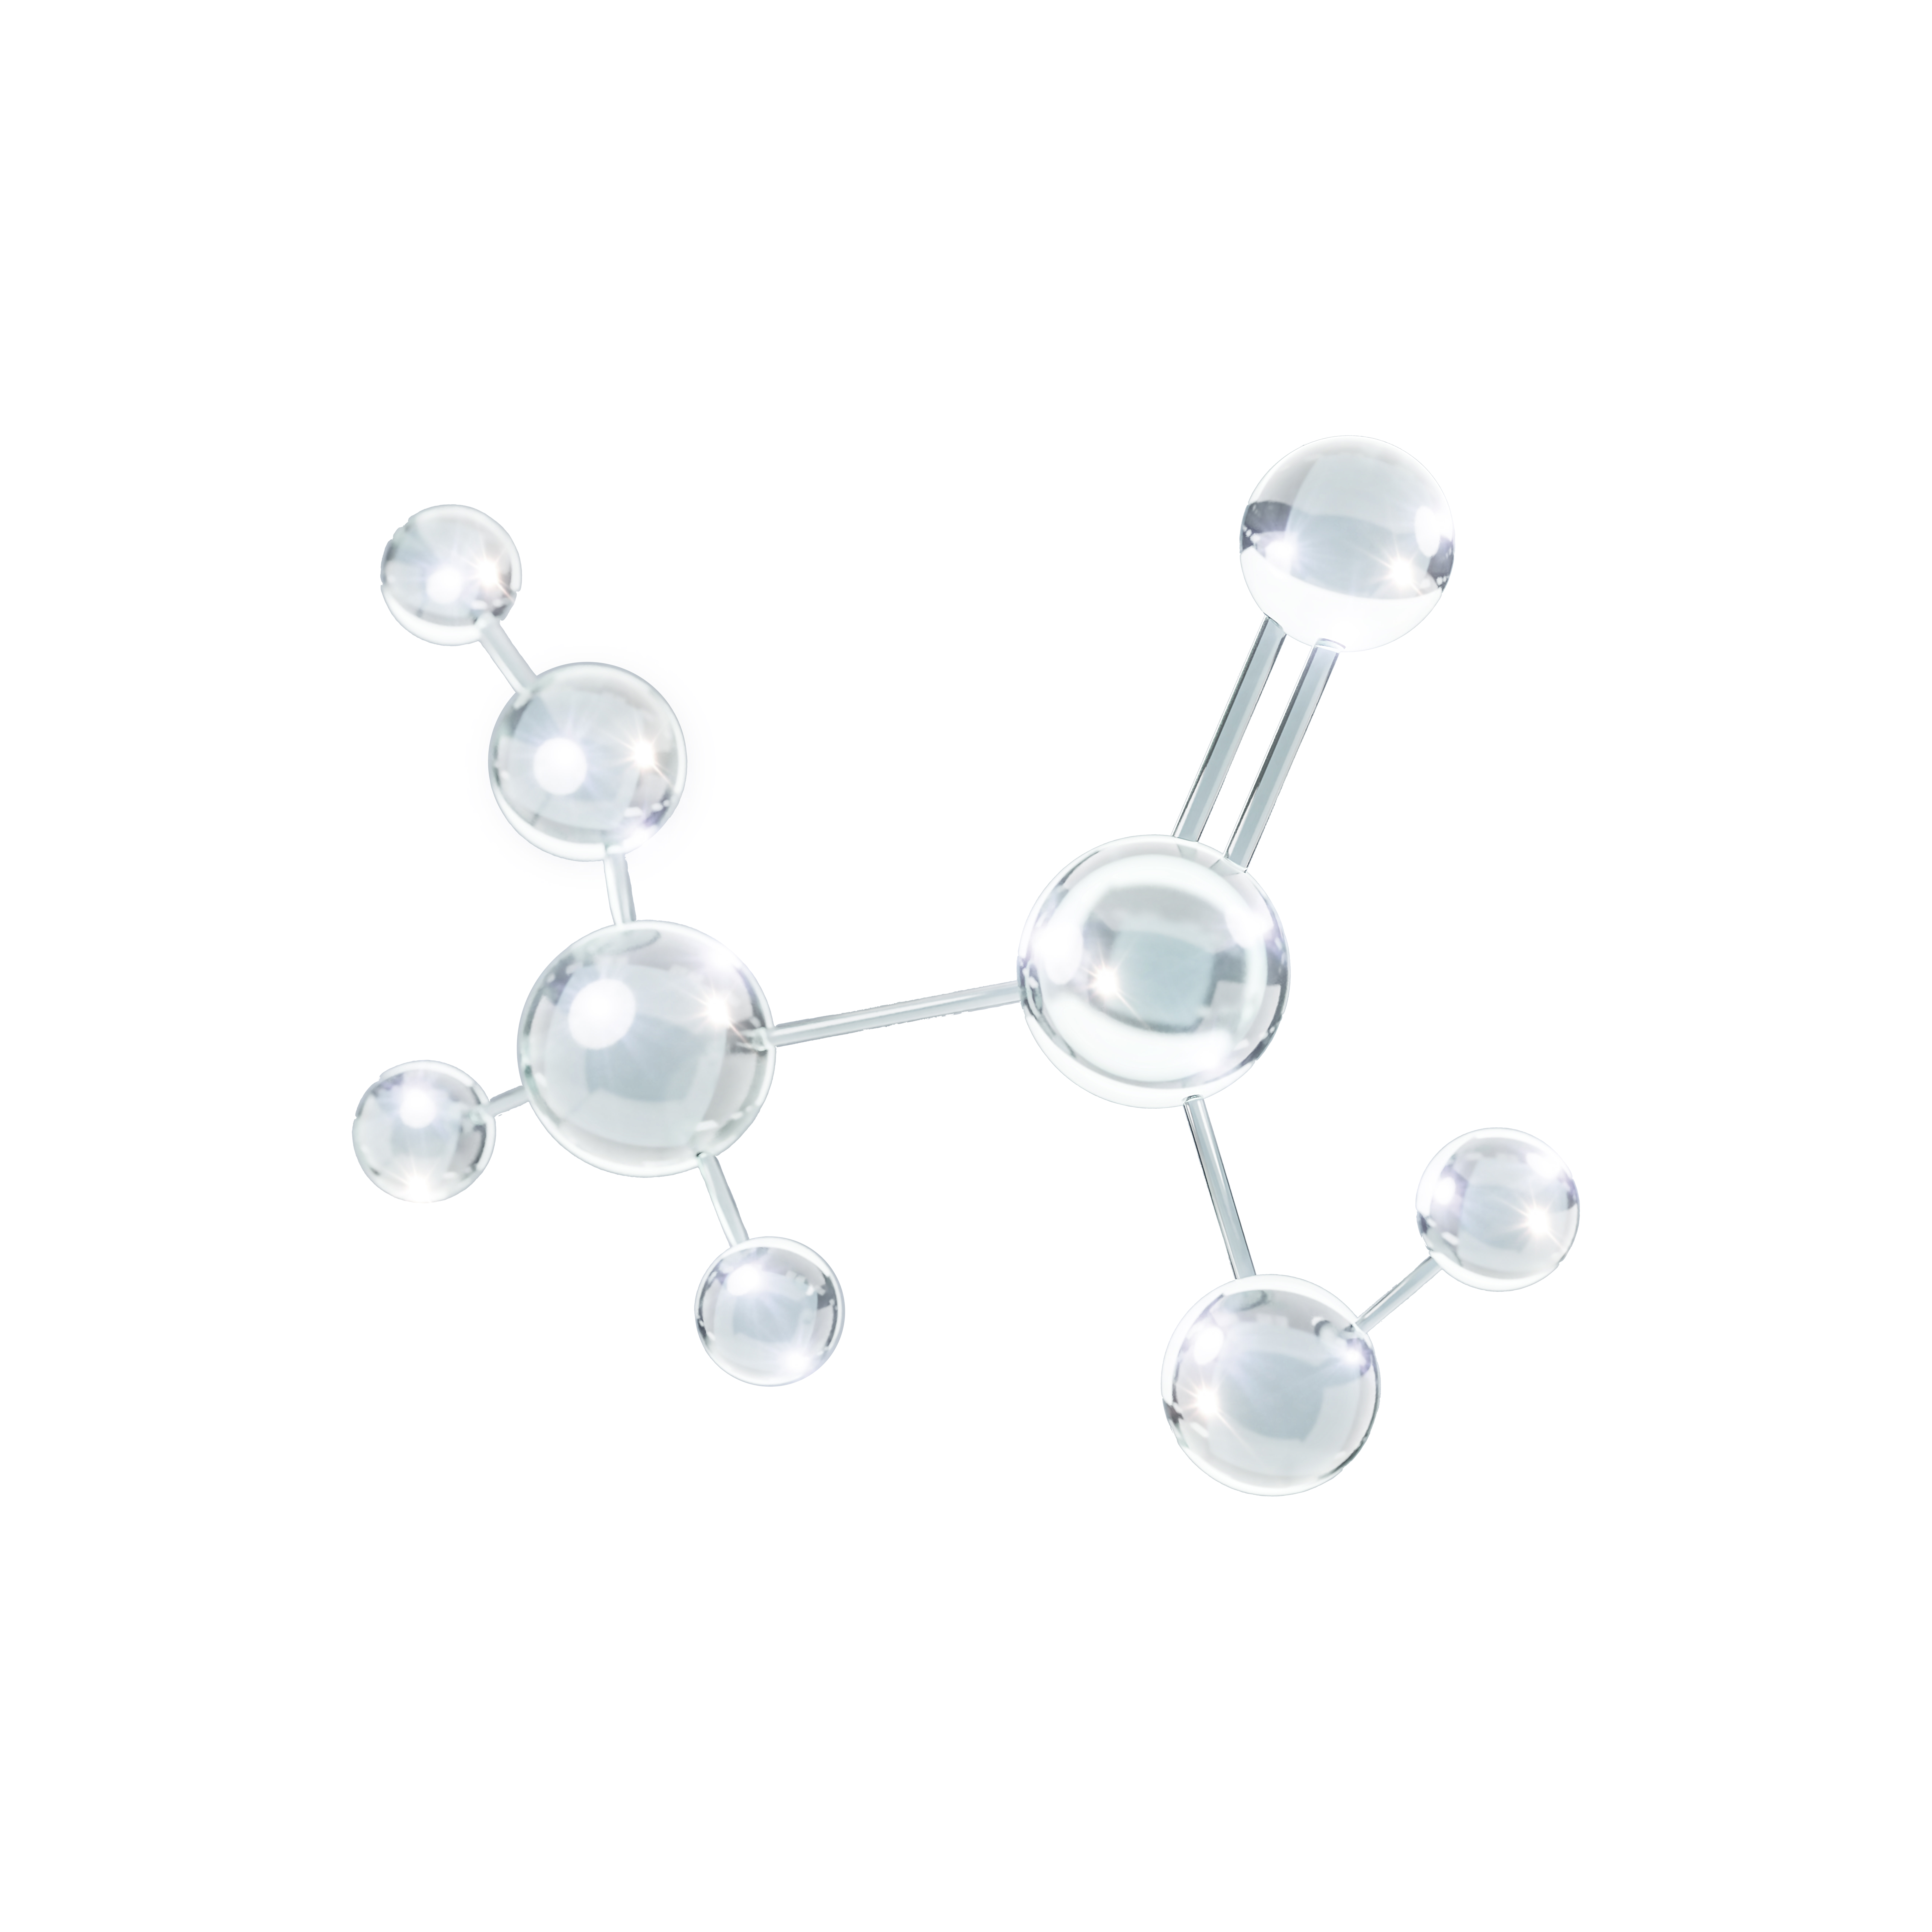 Shiny, silver-coloured molecules of salicylic acid, glycolic acid and hyaluronic acid.